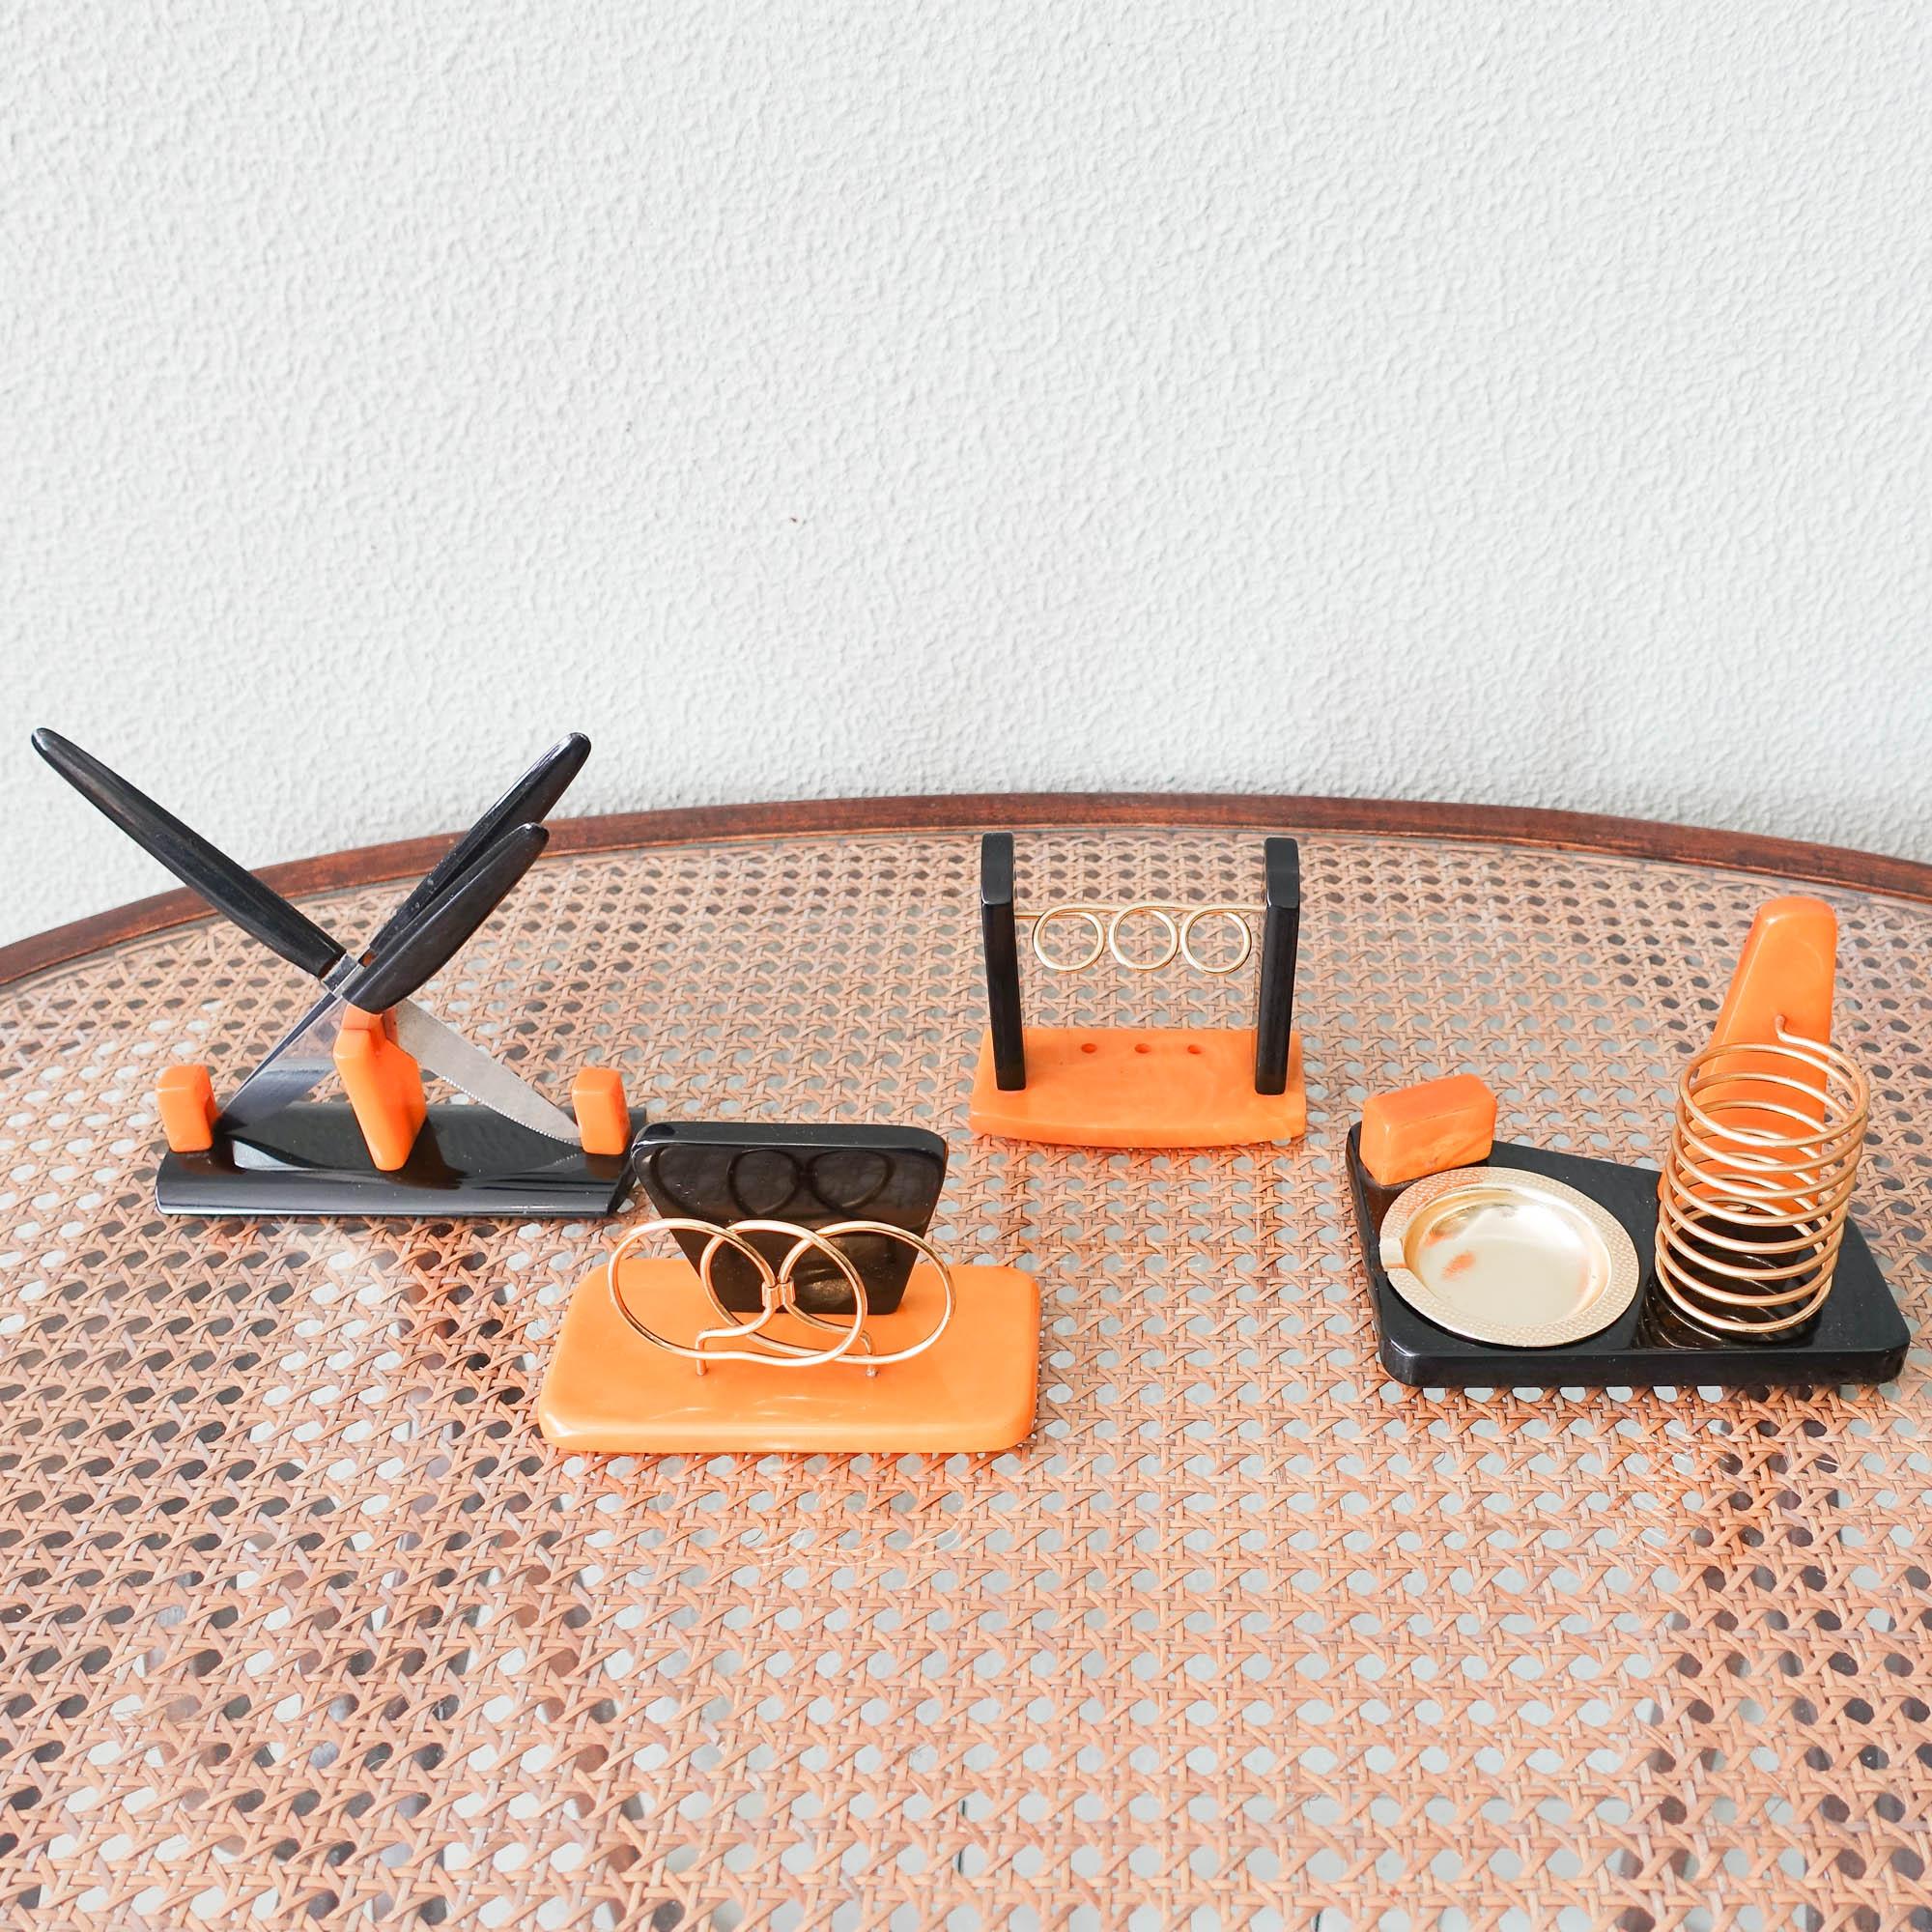 Dieses seltene Schreibtischset wurde in den 1940er Jahren in Deutschland entworfen und hergestellt. Es besteht aus einem Messerhalter mit drei Messern, einem Briefhalter, einem Aschenbecher und Zigarettenhalter und einem Stifthalter. Alle Stücke